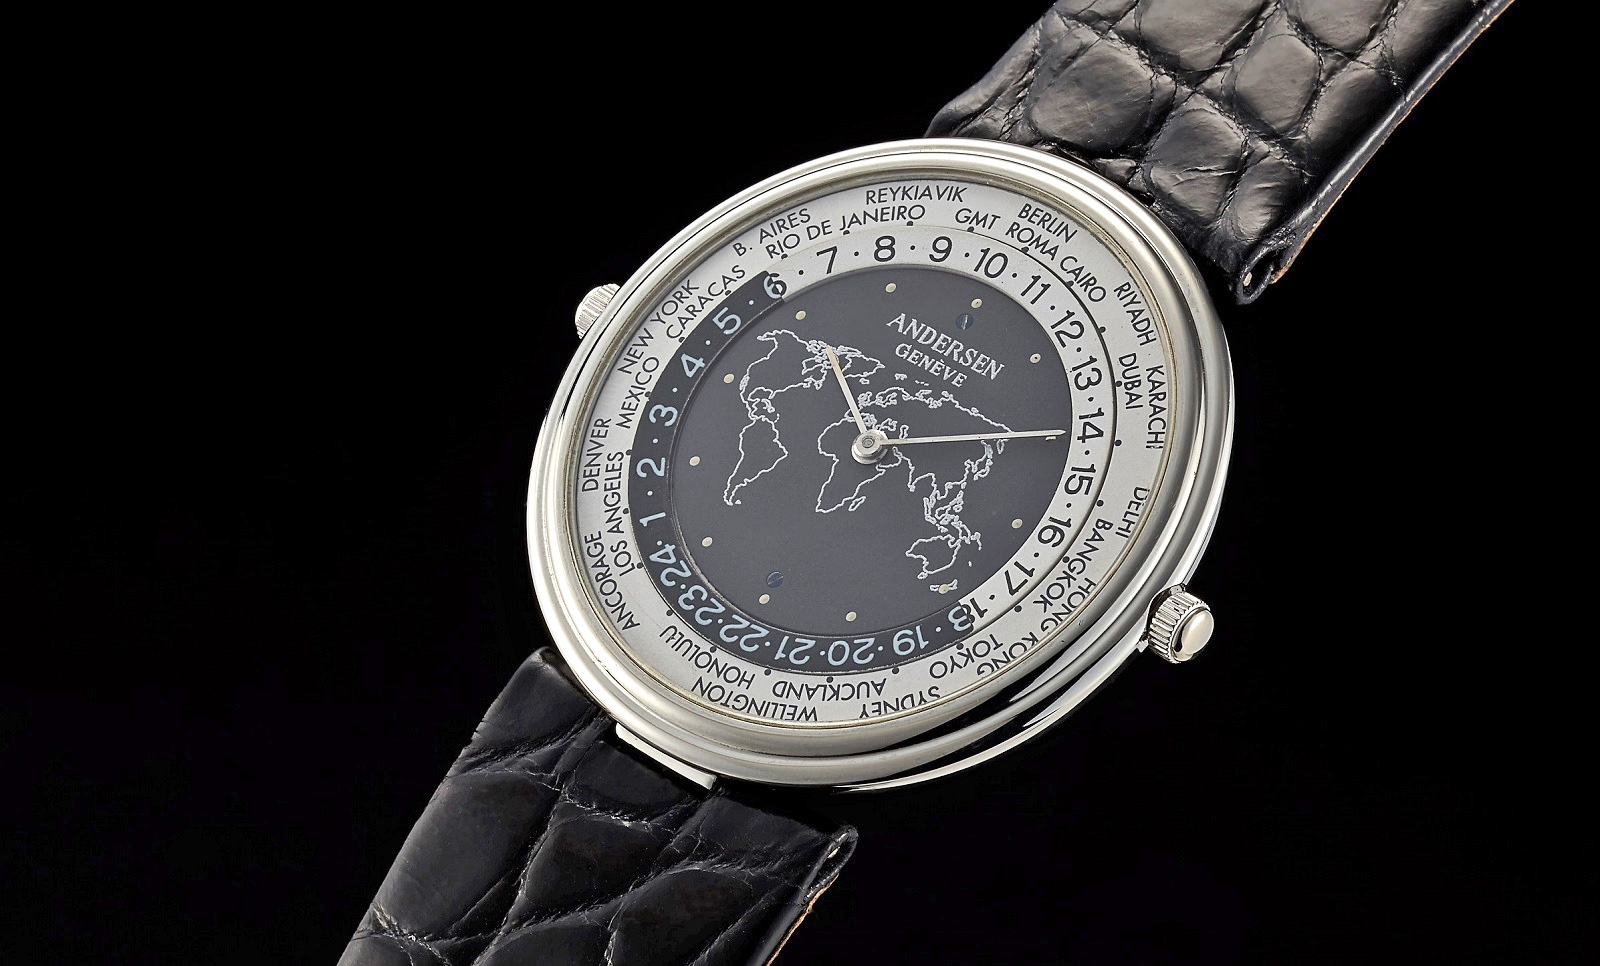 Đồng hồ Mundus chỉ dày 4,2mm, được cung cấp năng lượng bởi bộ máy Frédéric Piguet cal. 21 có kèm theo cơ chế giờ thế giới. Chỉ có 24 chiếc đồng hồ Mundus làm từ platinum được tung ra trong năm 1993